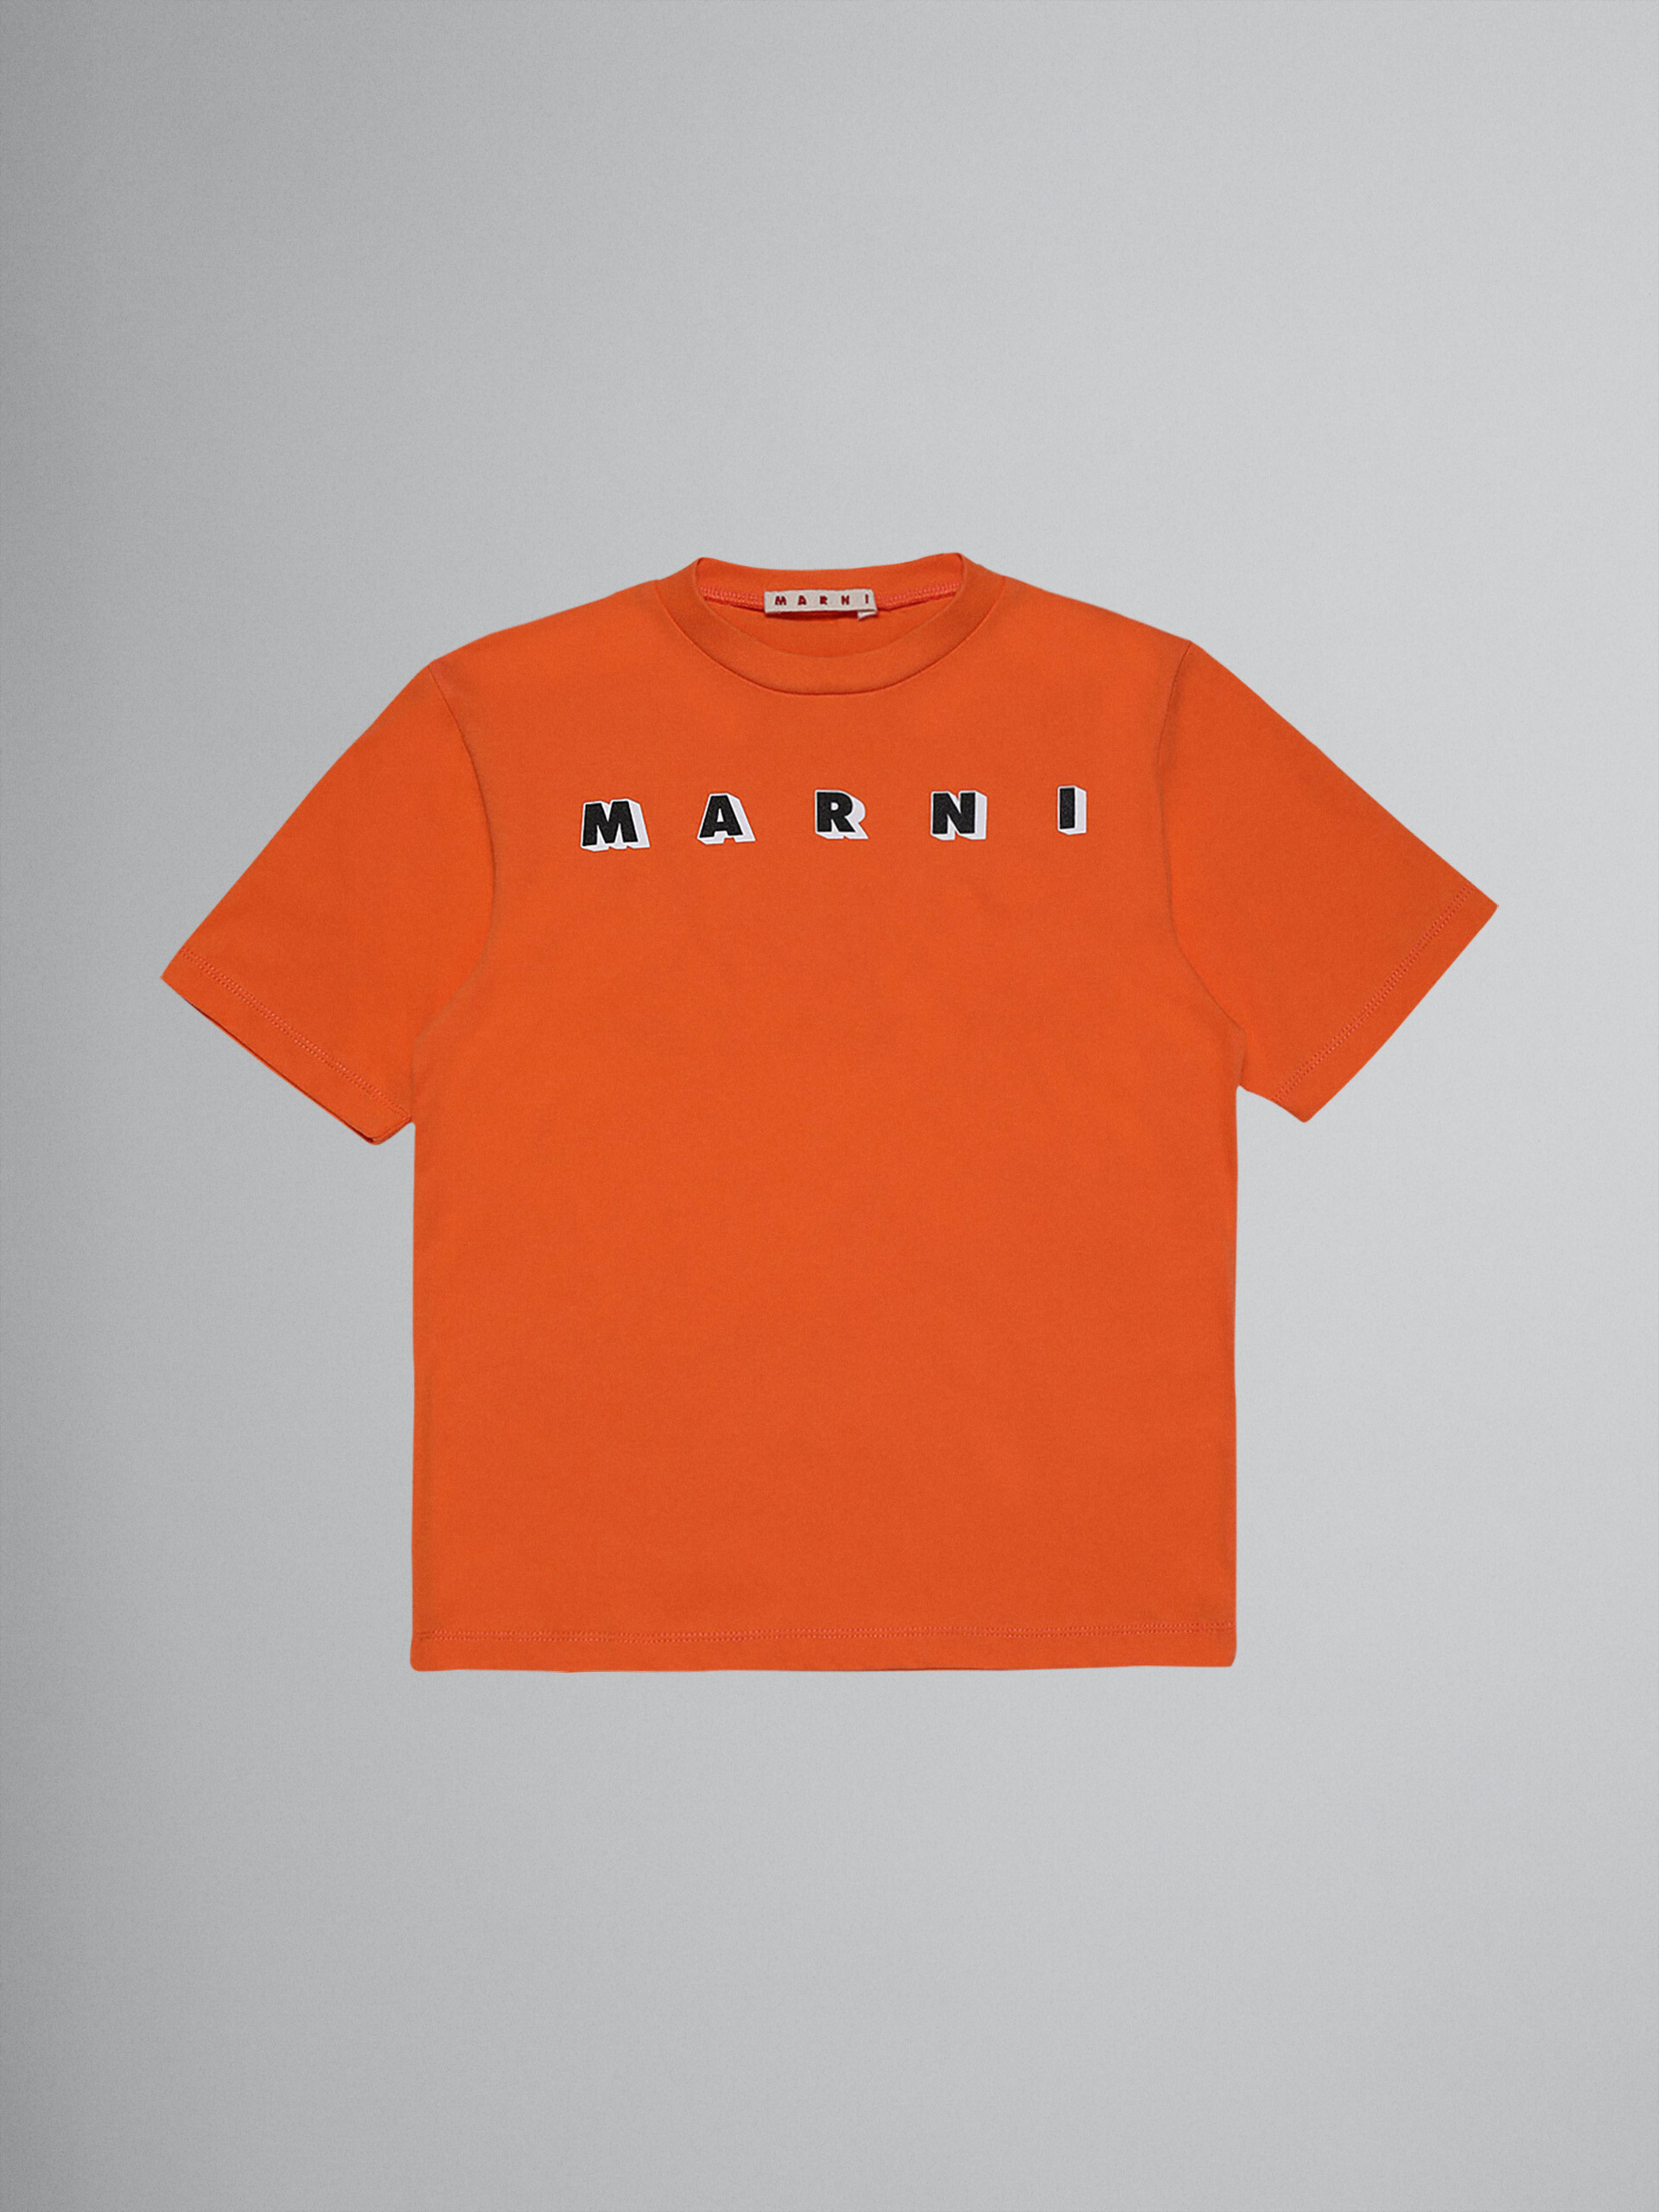 T-Shirt aus orangefarbenem Baumwolljersey mit Logo - T-shirts - Image 1